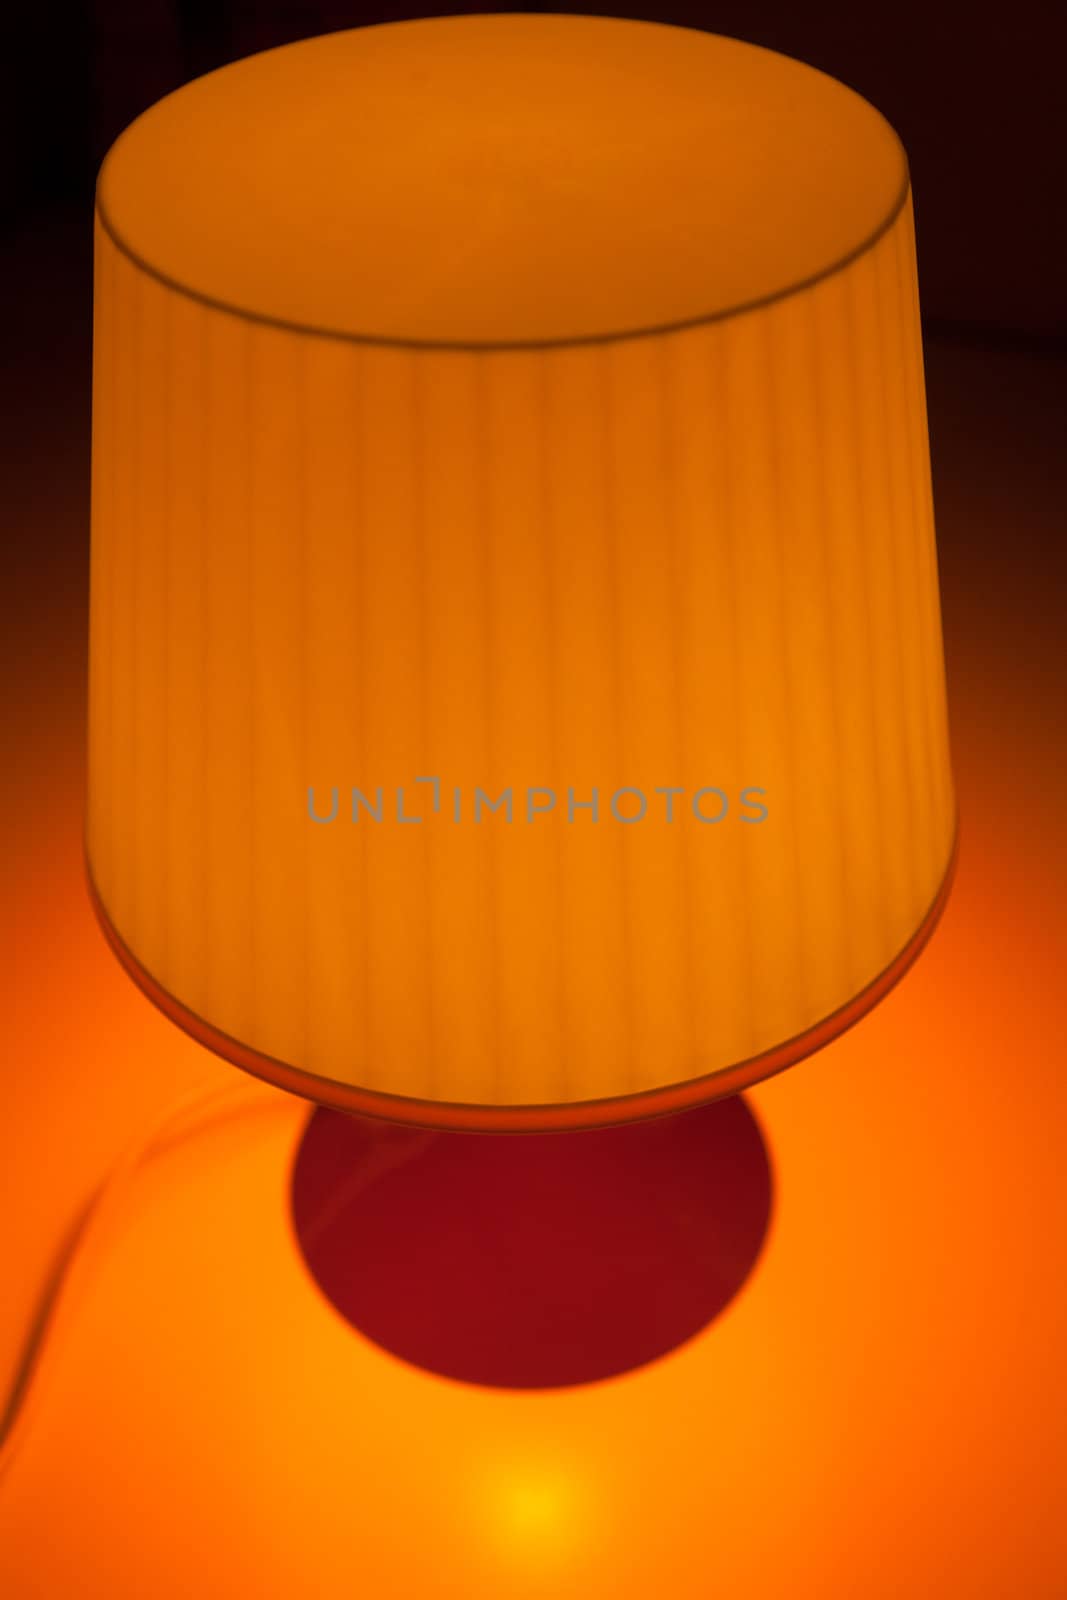 Orange lampshade on an orange background